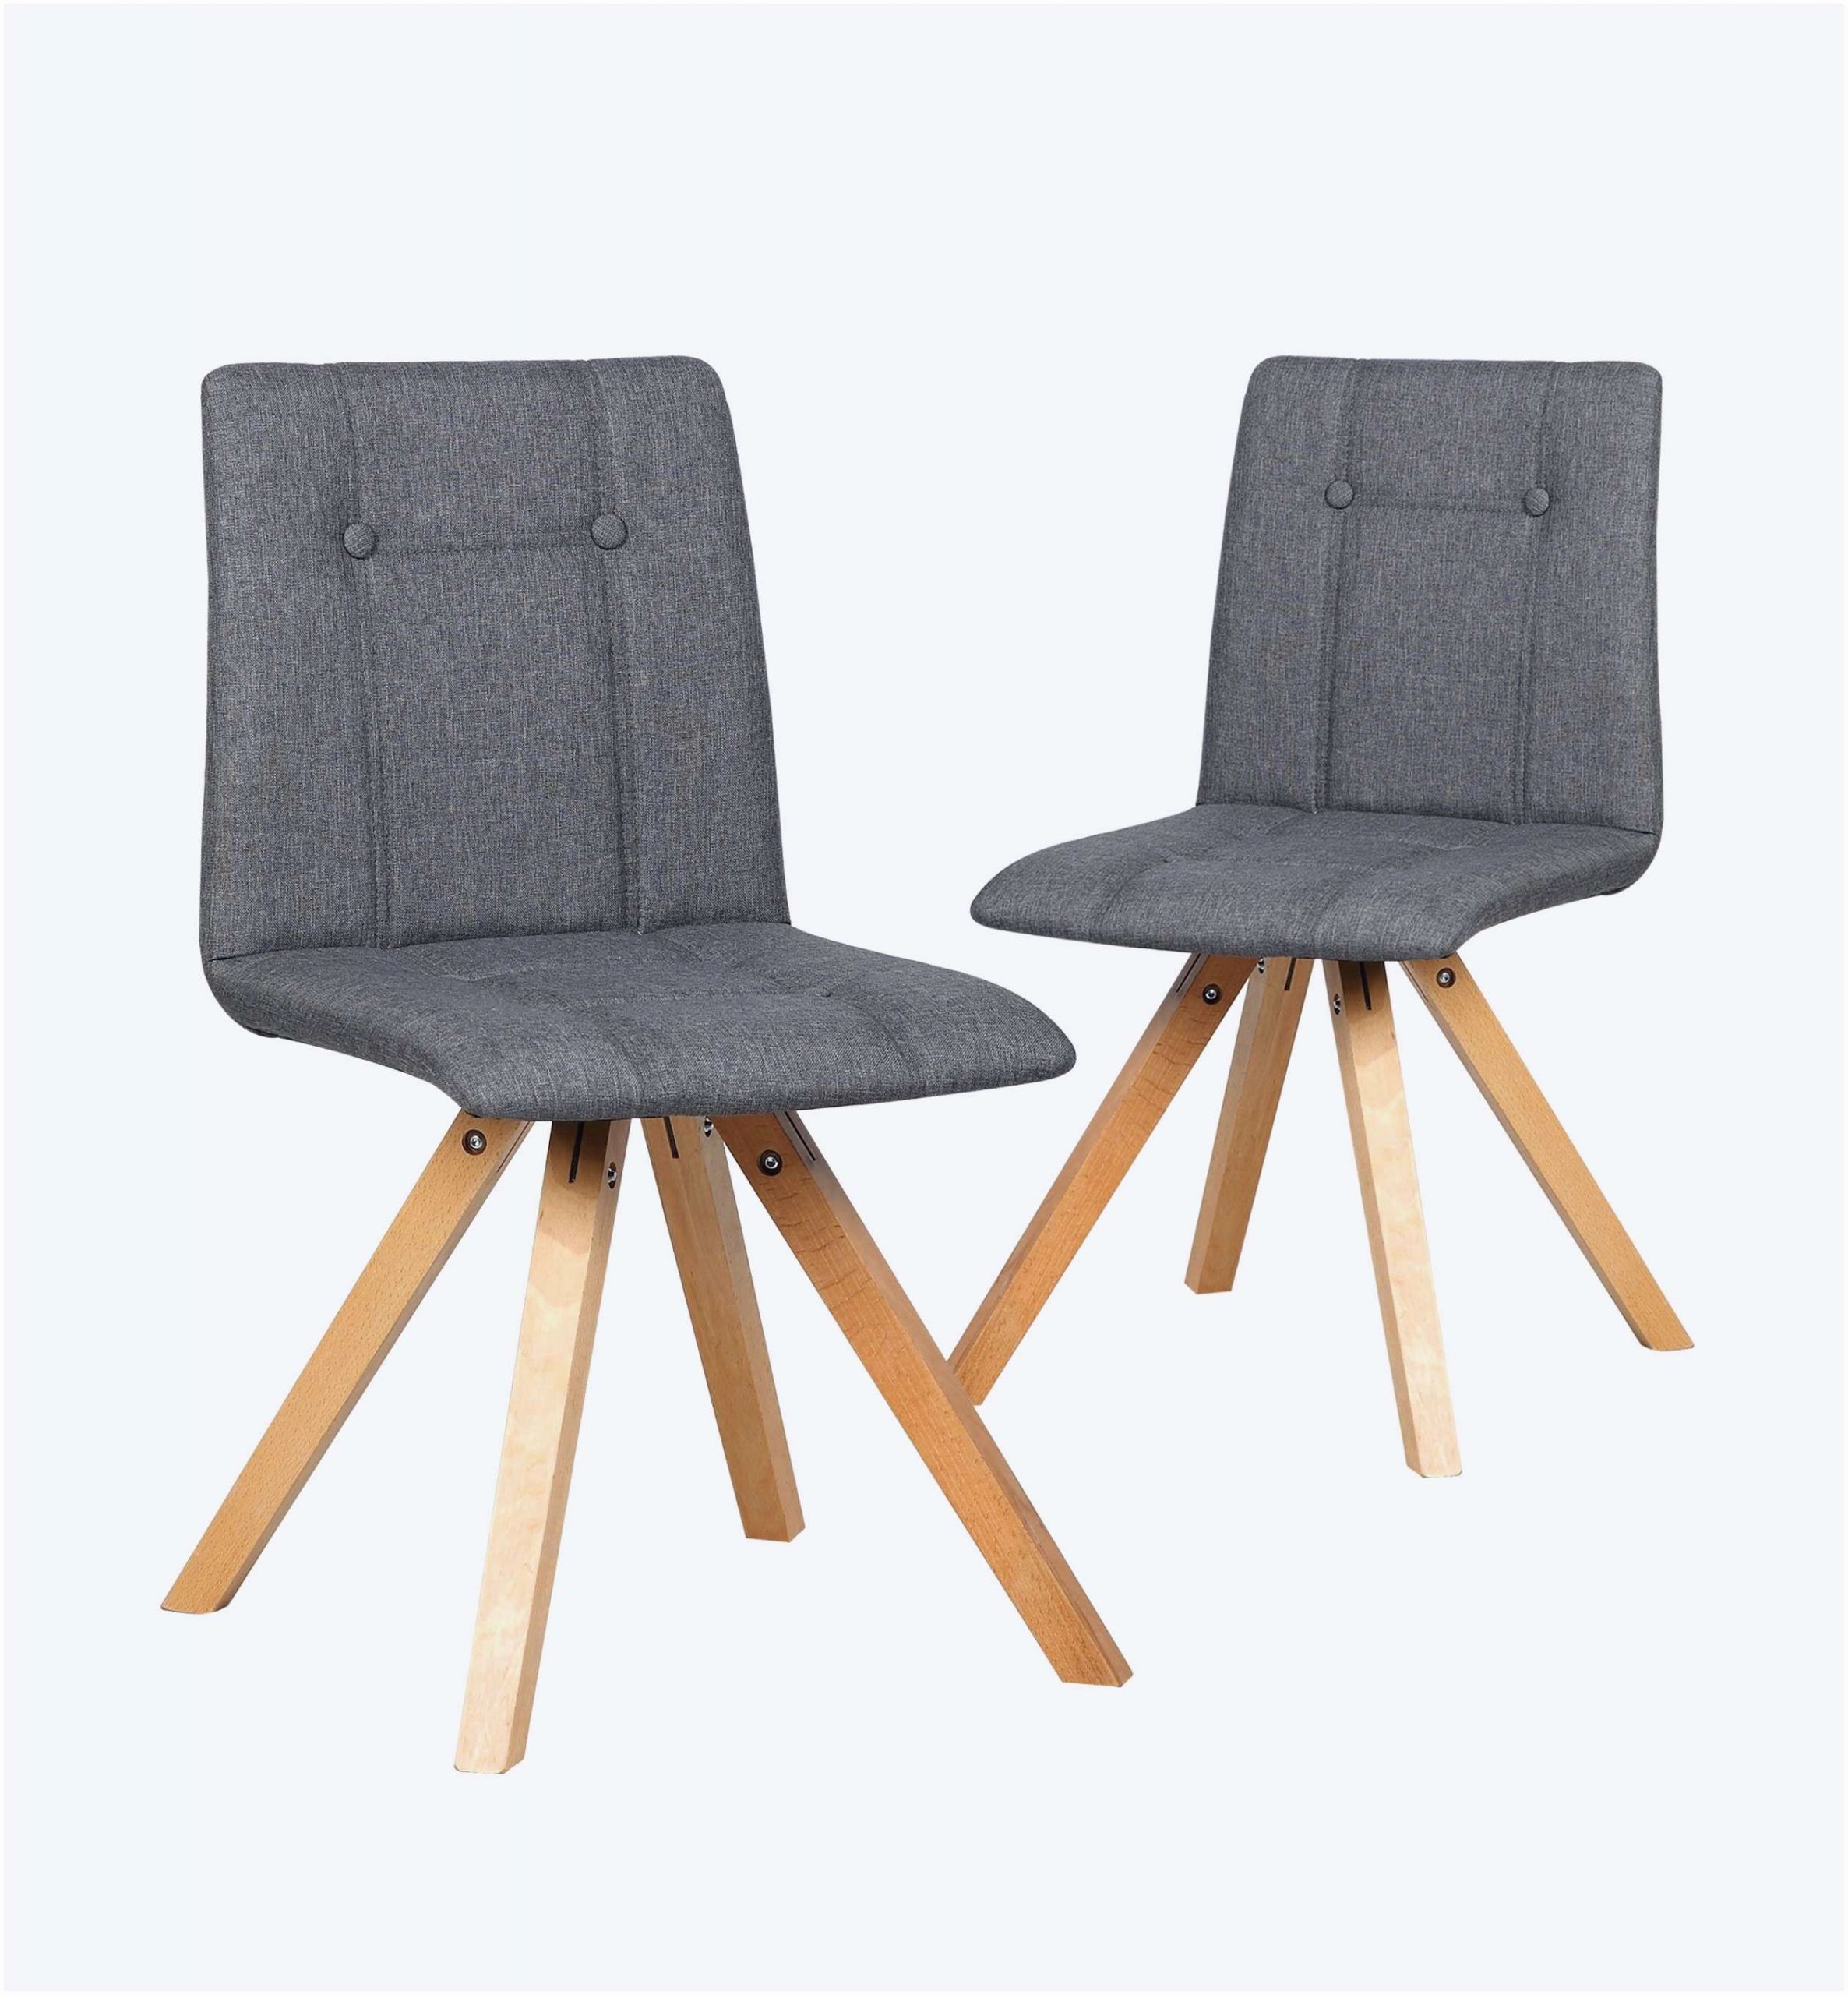 chaise en bois pas cher nouveau de chaise plan de travail scandinave luckytroll de chaise en bois pas cher scaled